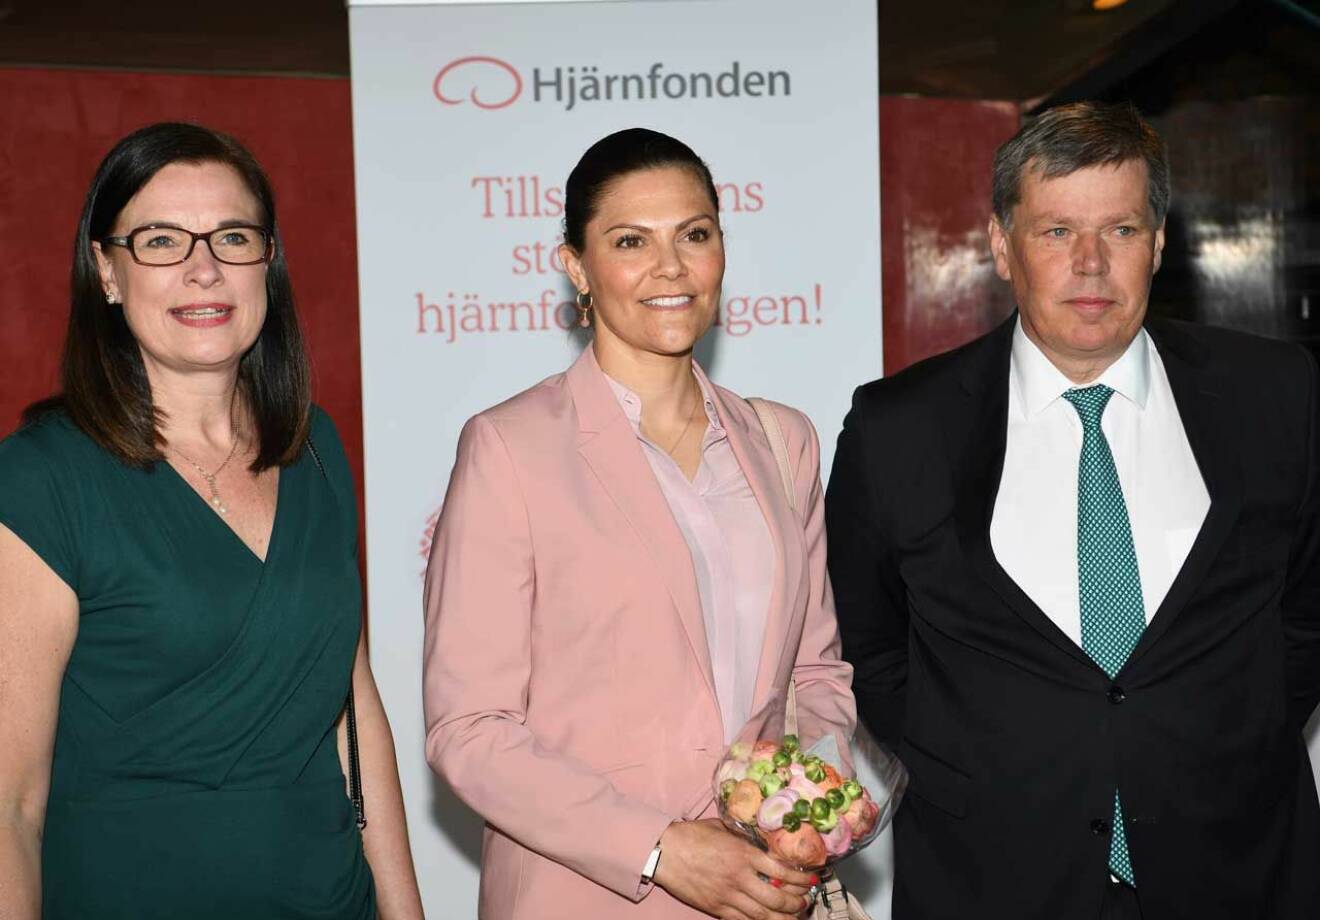 Kronprinsessan tillsammans med Anna Hemlin, Hjärnfondens generalsekreterare och Peter Thelin, Hjärnfondens ordförande. 